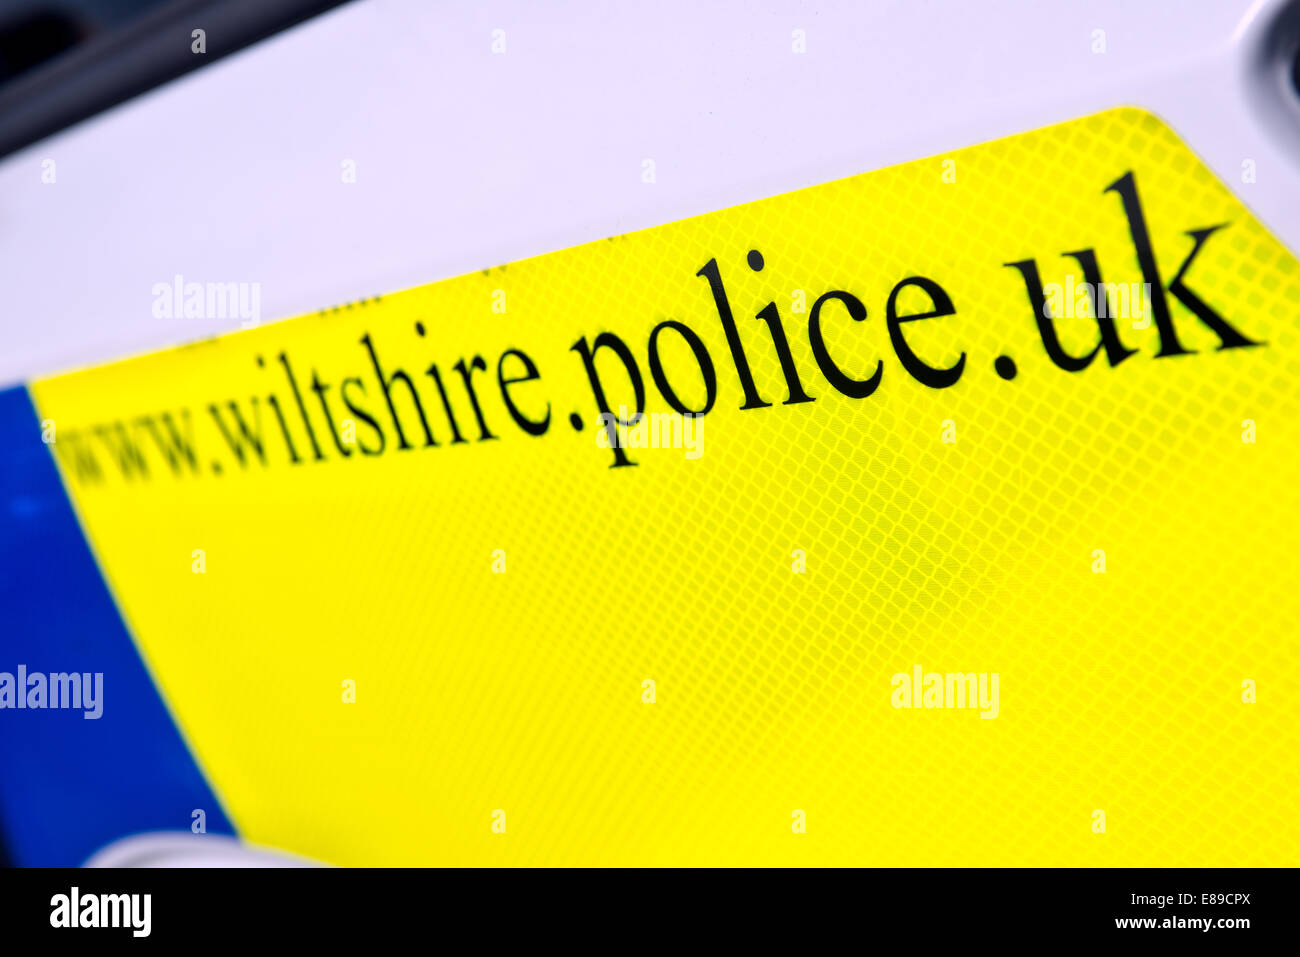 El día glo firmar en blanco al lado de un coche de la policía británica, Wiltshire dada la dirección del sitio web de la policía local. Foto de stock